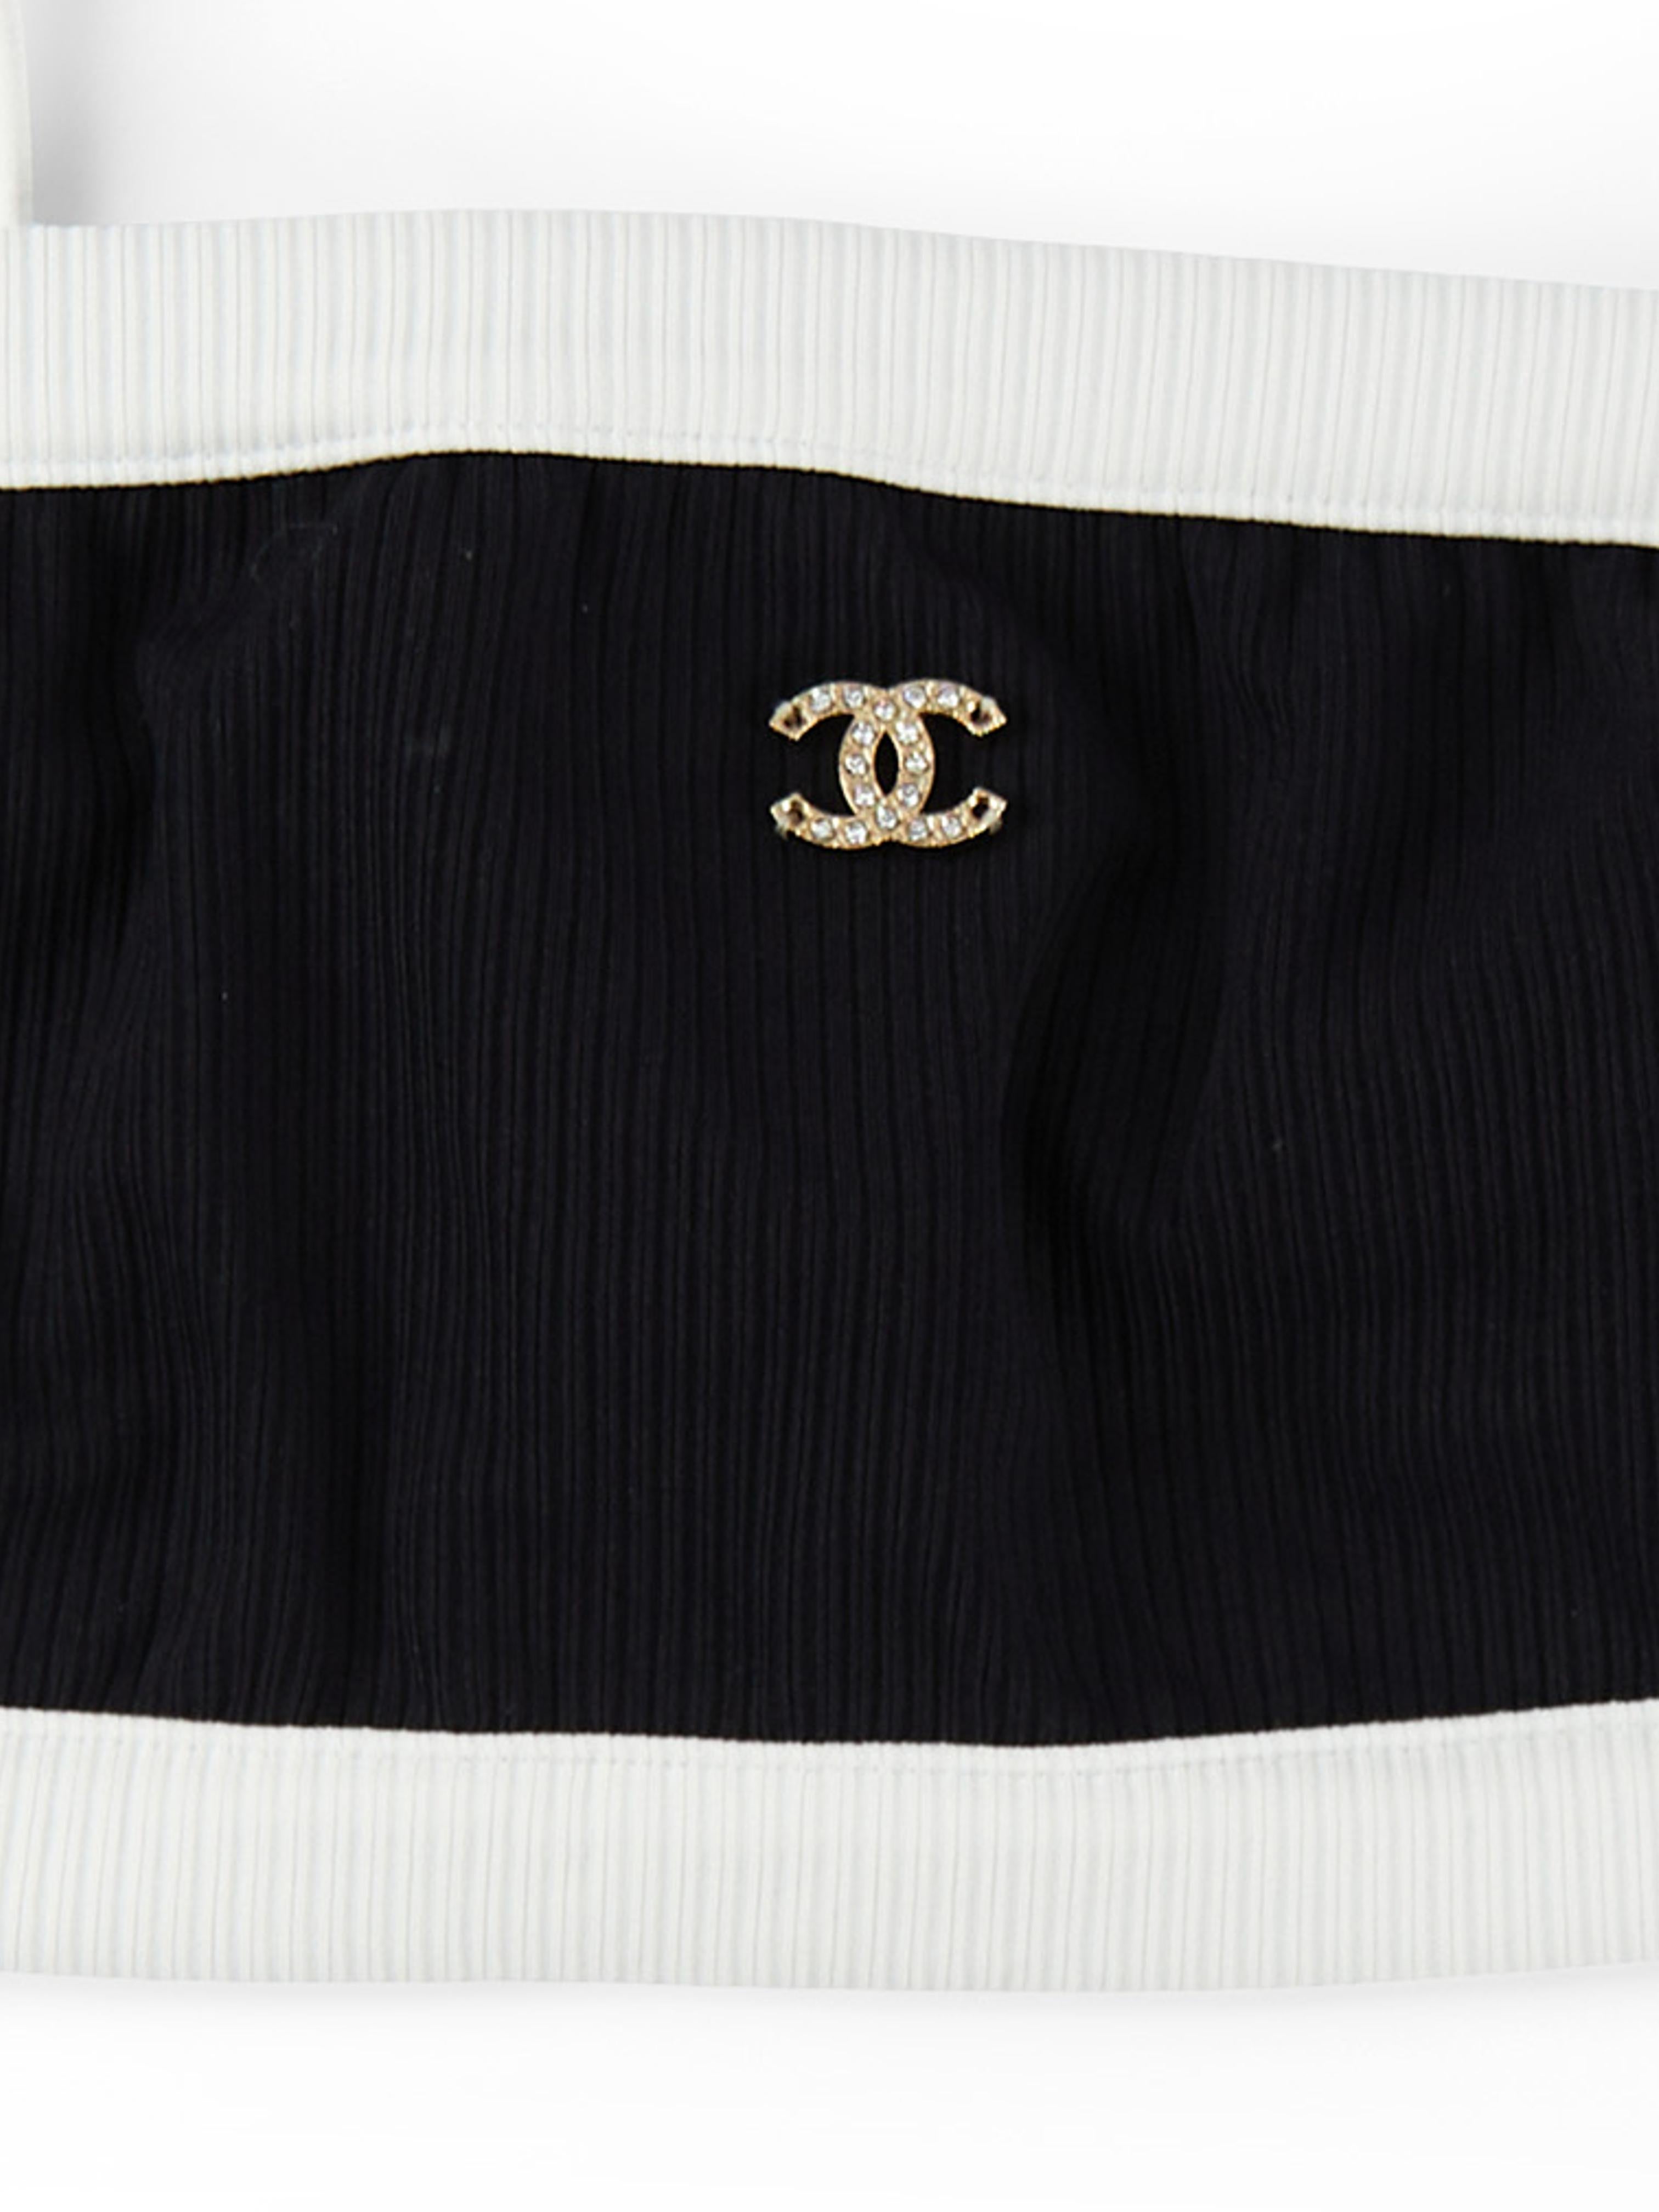 Chanel Geripptes Badeanzug-Oberteil in Schwarz und Weiß 

Geripptes Stretched Jersey

Strass CC Logo 

Größe 36

Begleitet von: Chanel Staubbeutel (ohne Box)



